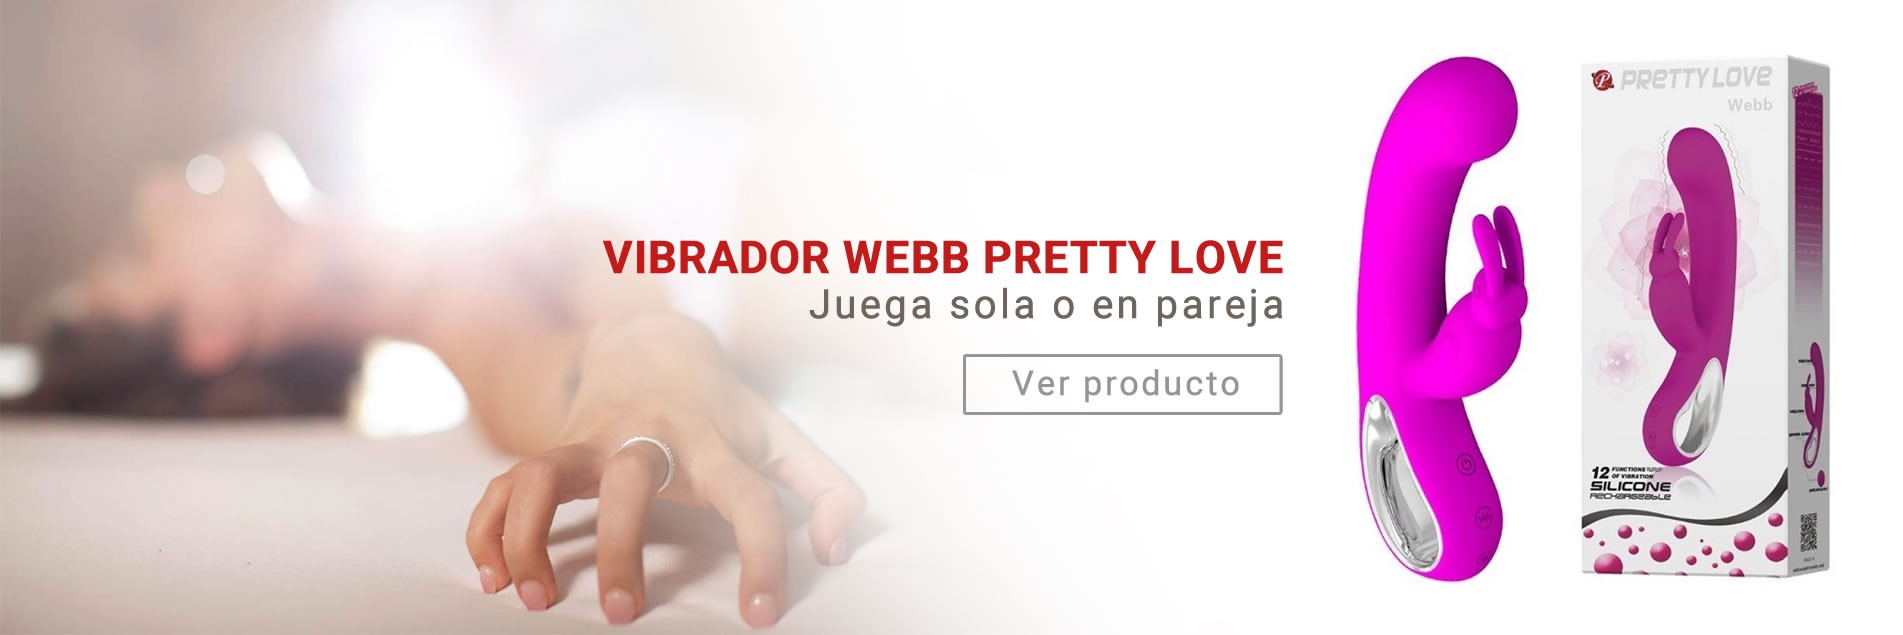 Vibrador webb Pretty Love - Fruto Prohibido